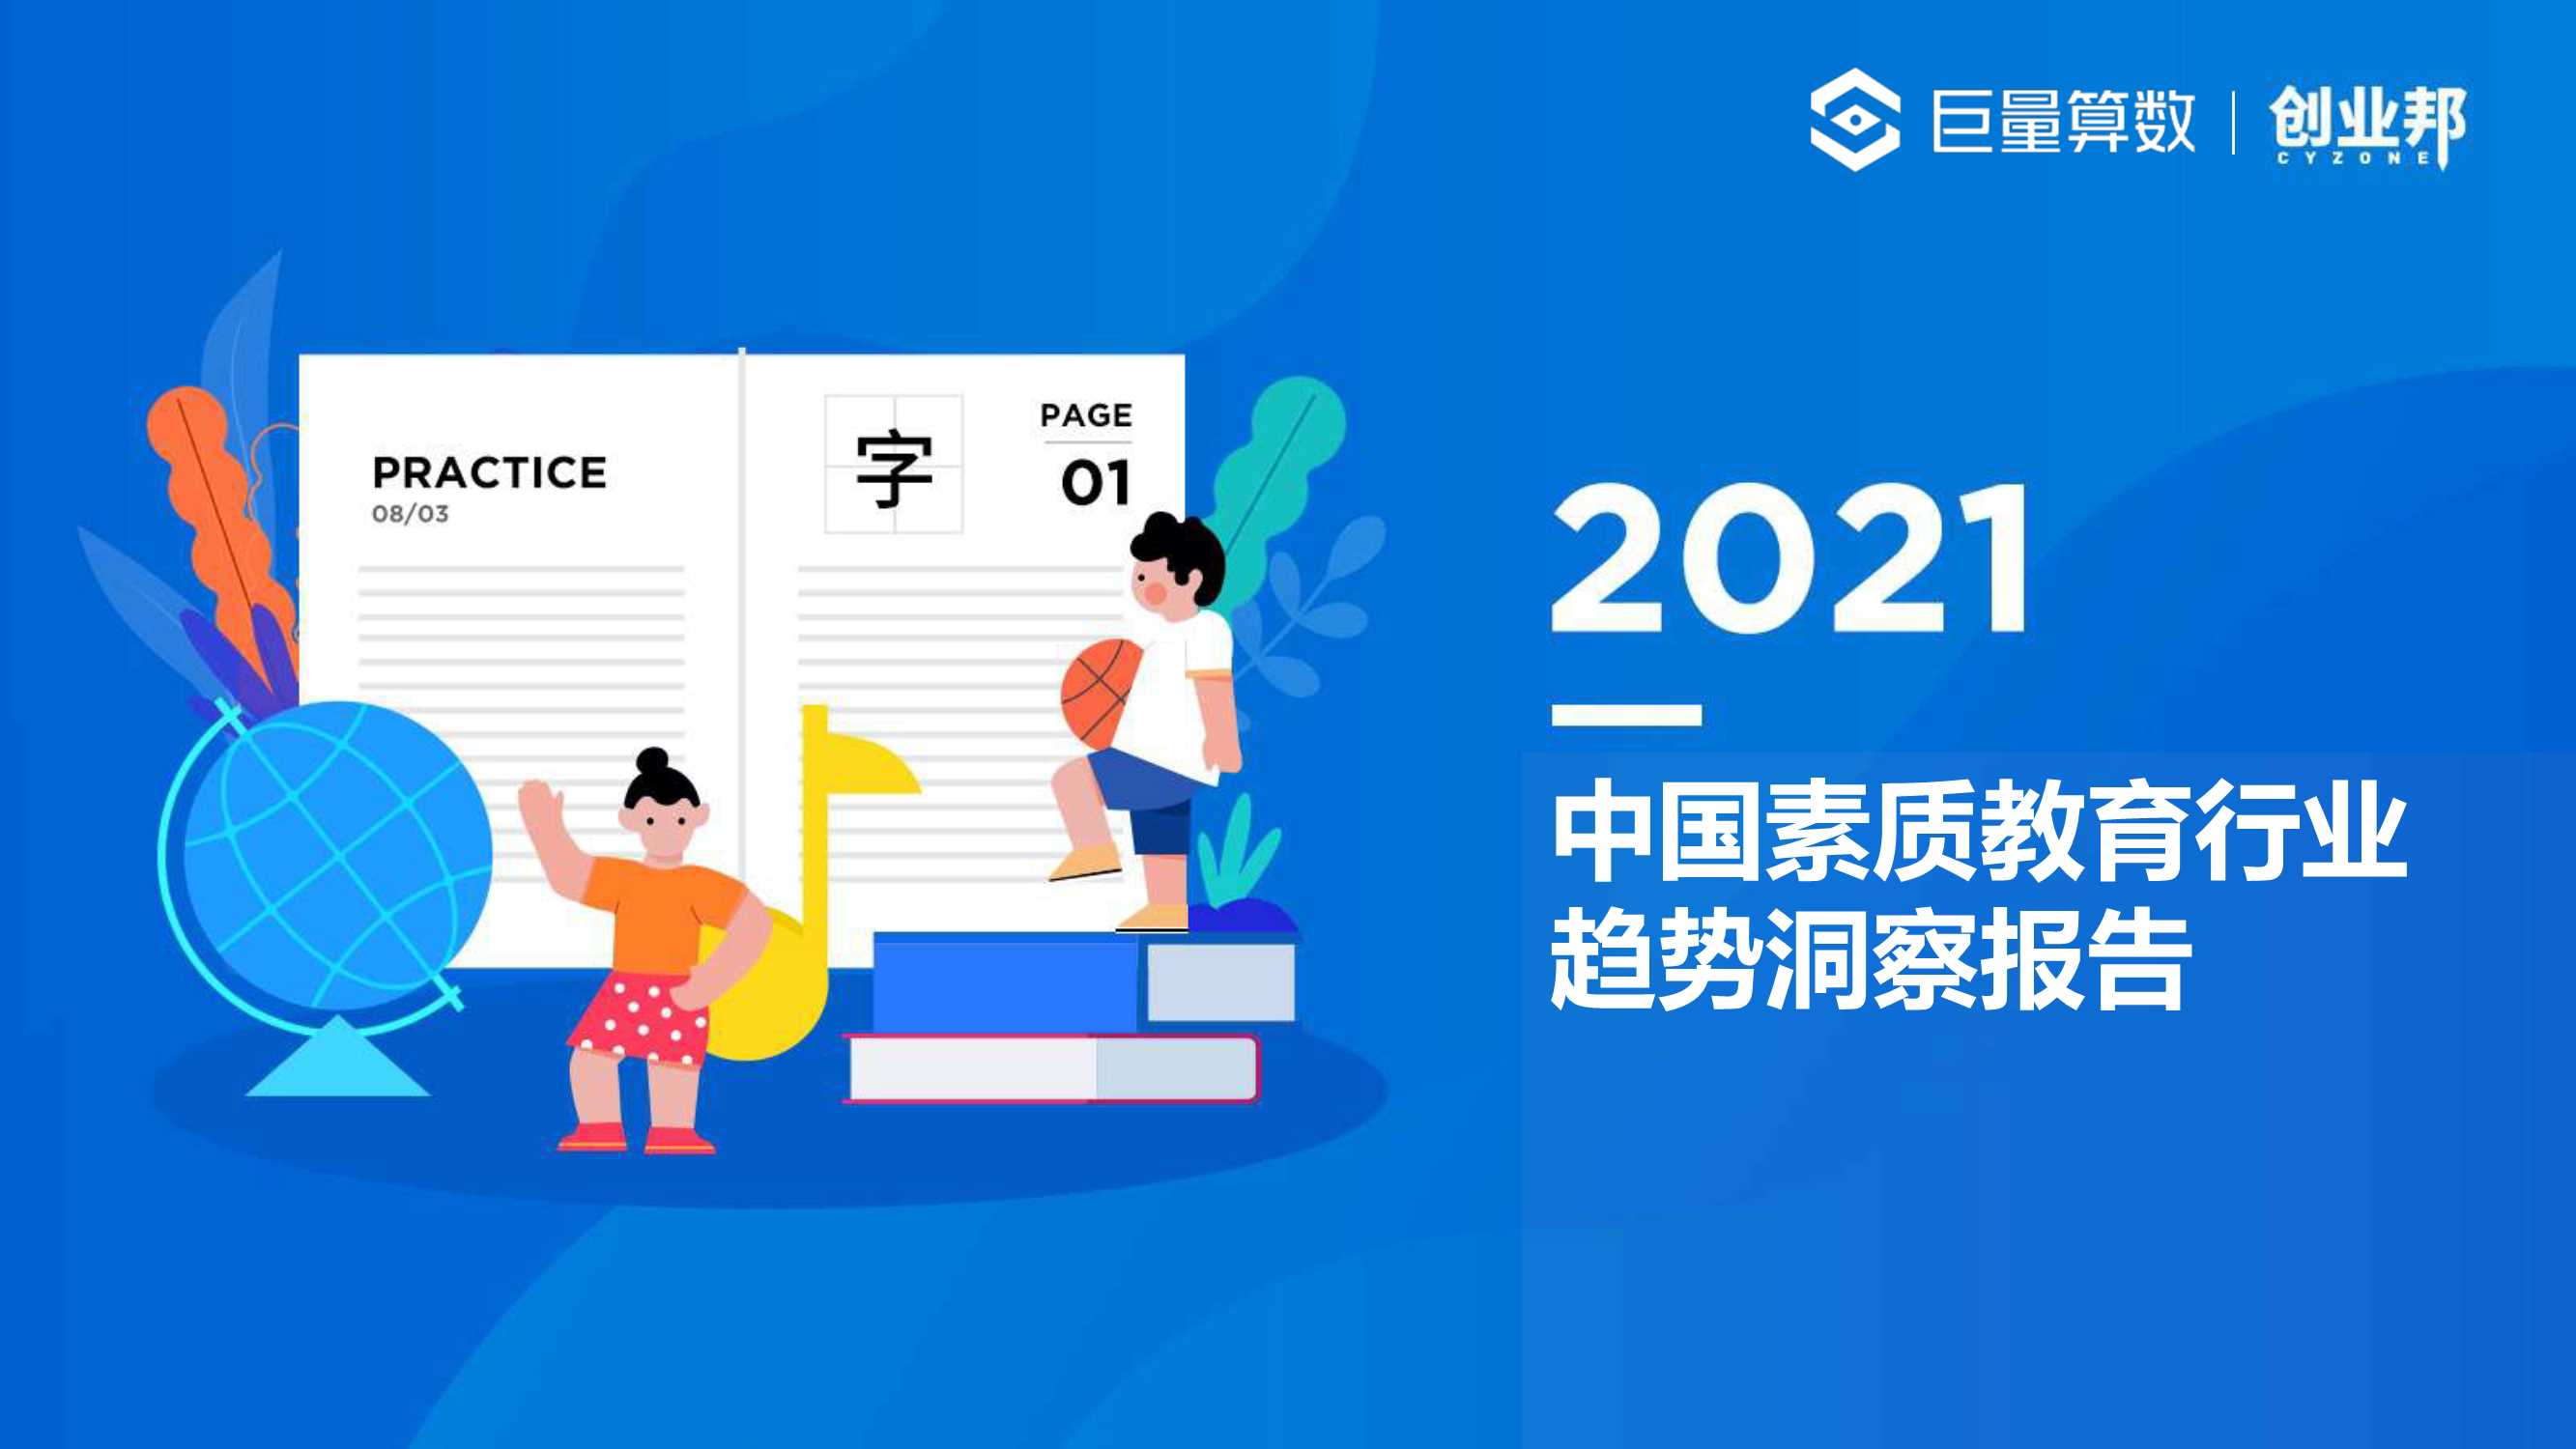 巨量算数-2021中国素质教育行业趋势洞察报告-2021.08-38页